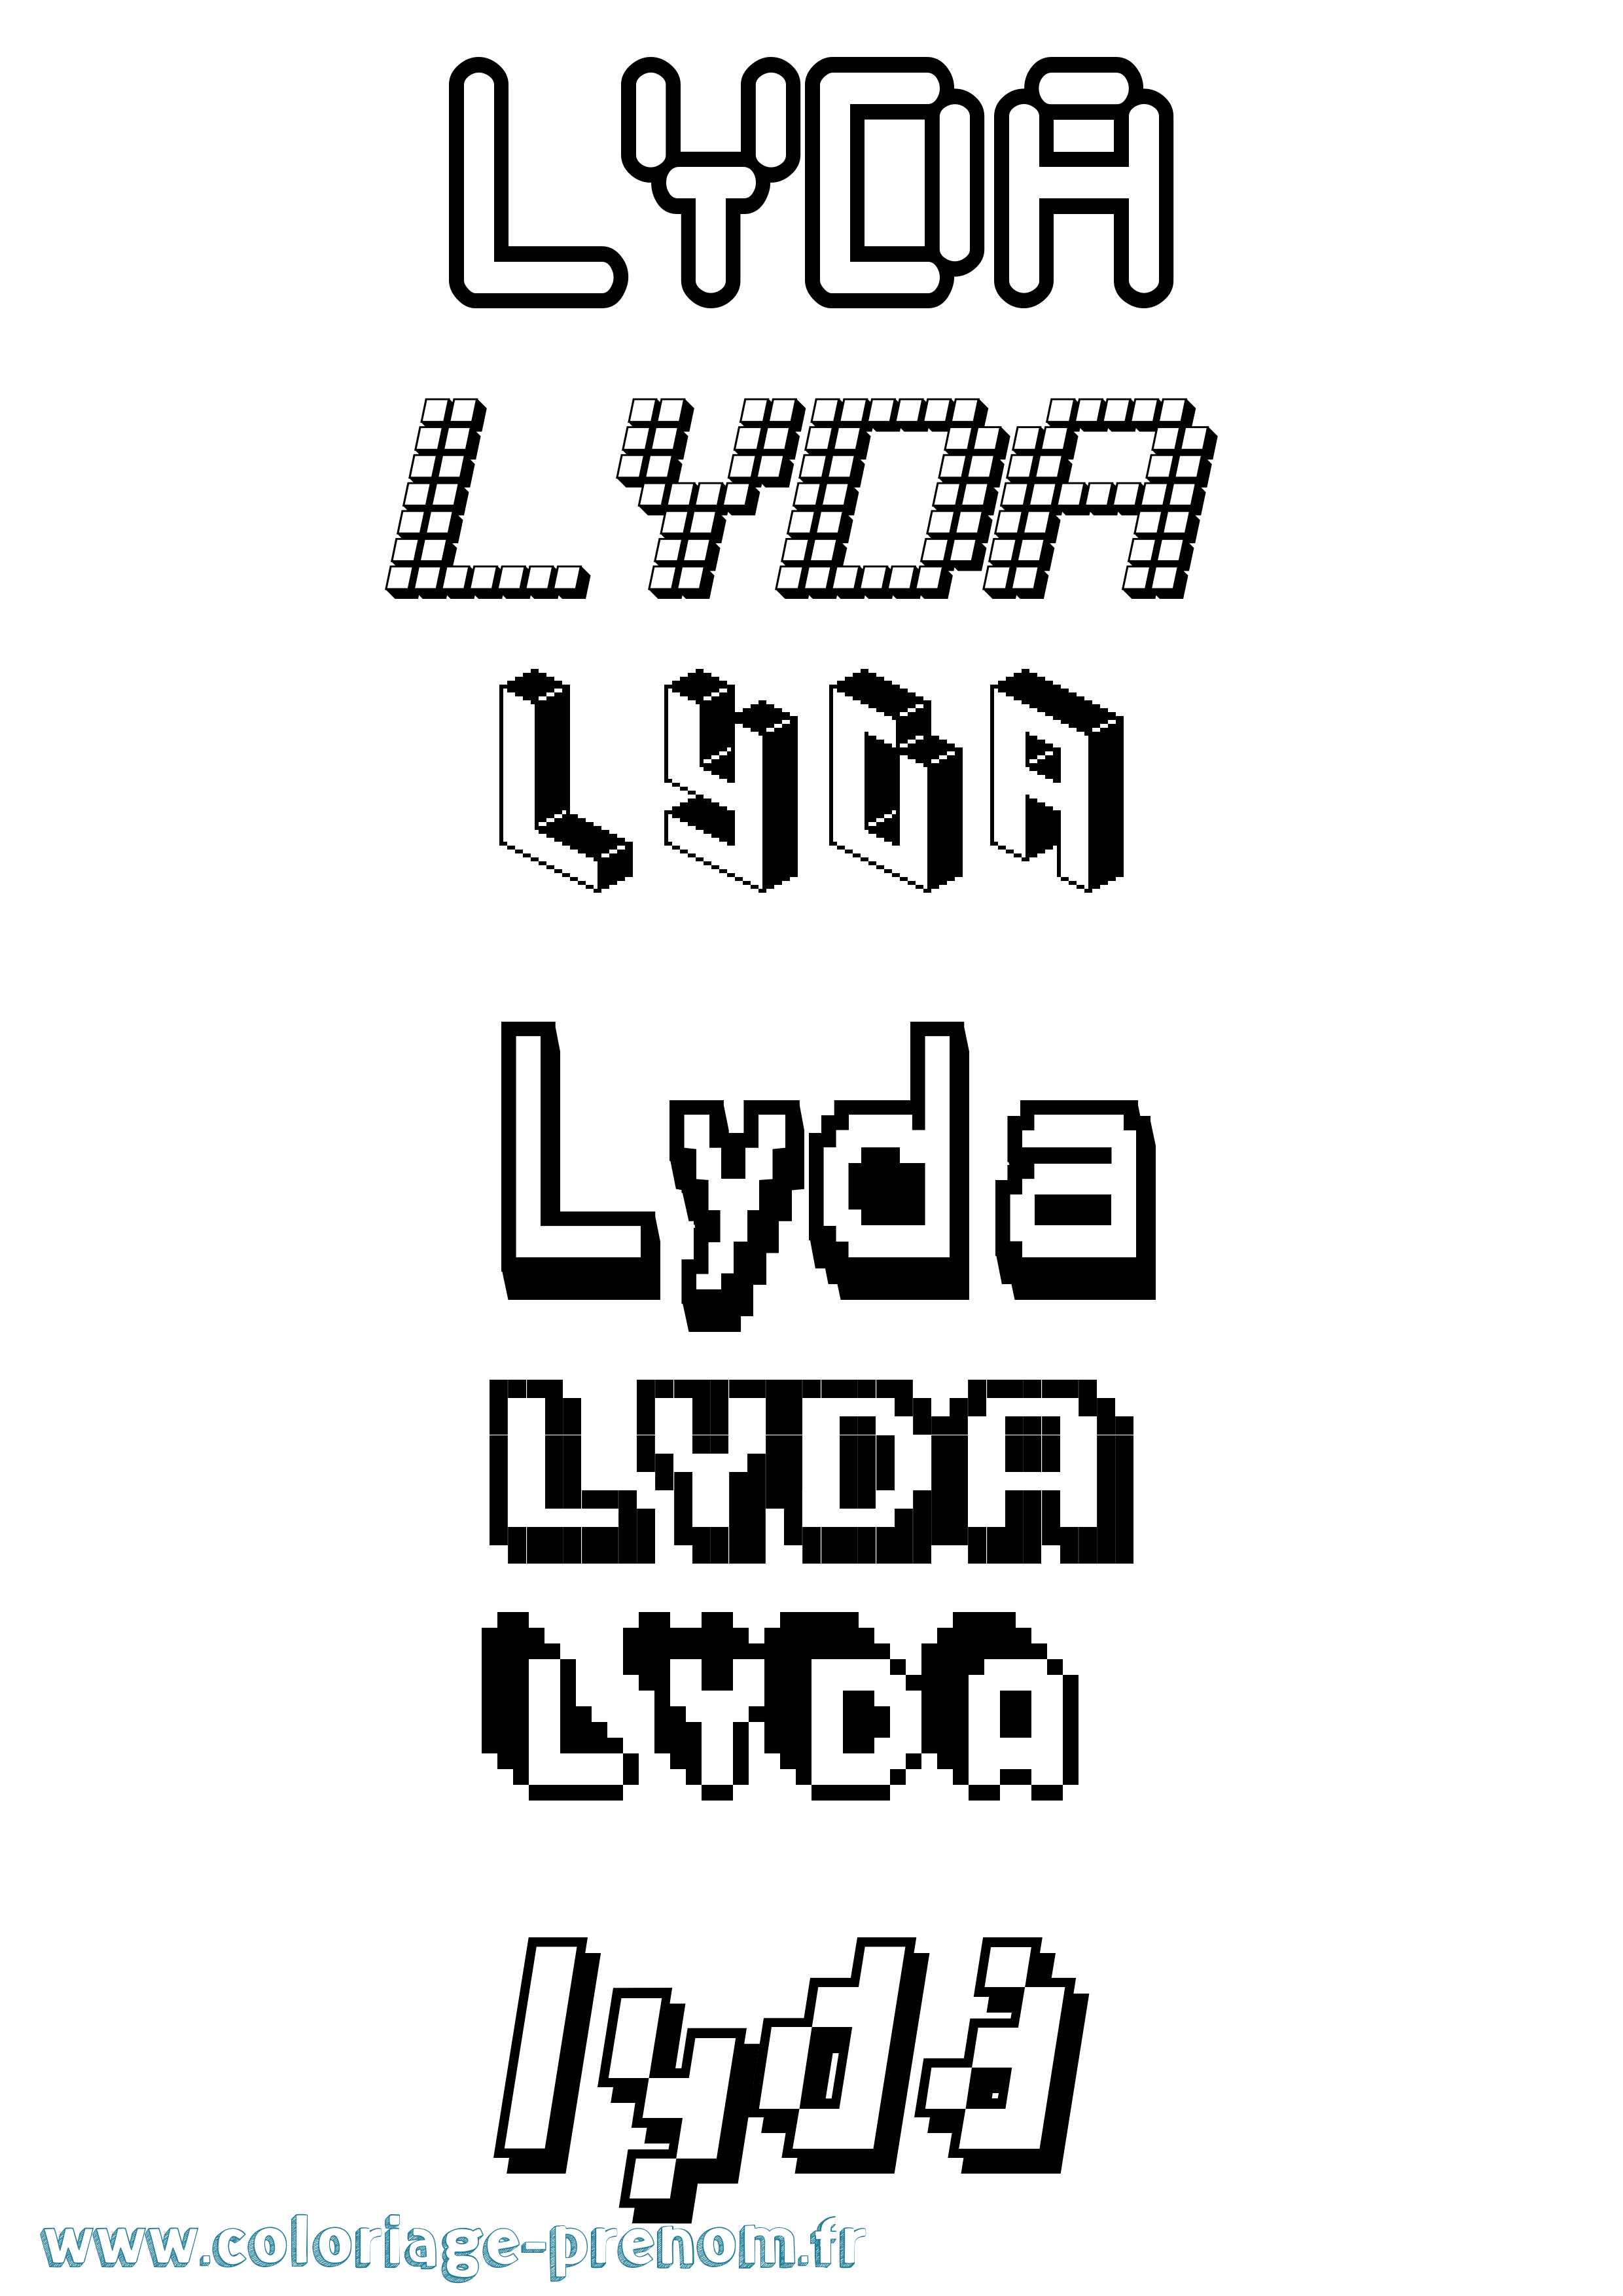 Coloriage prénom Lyda Pixel